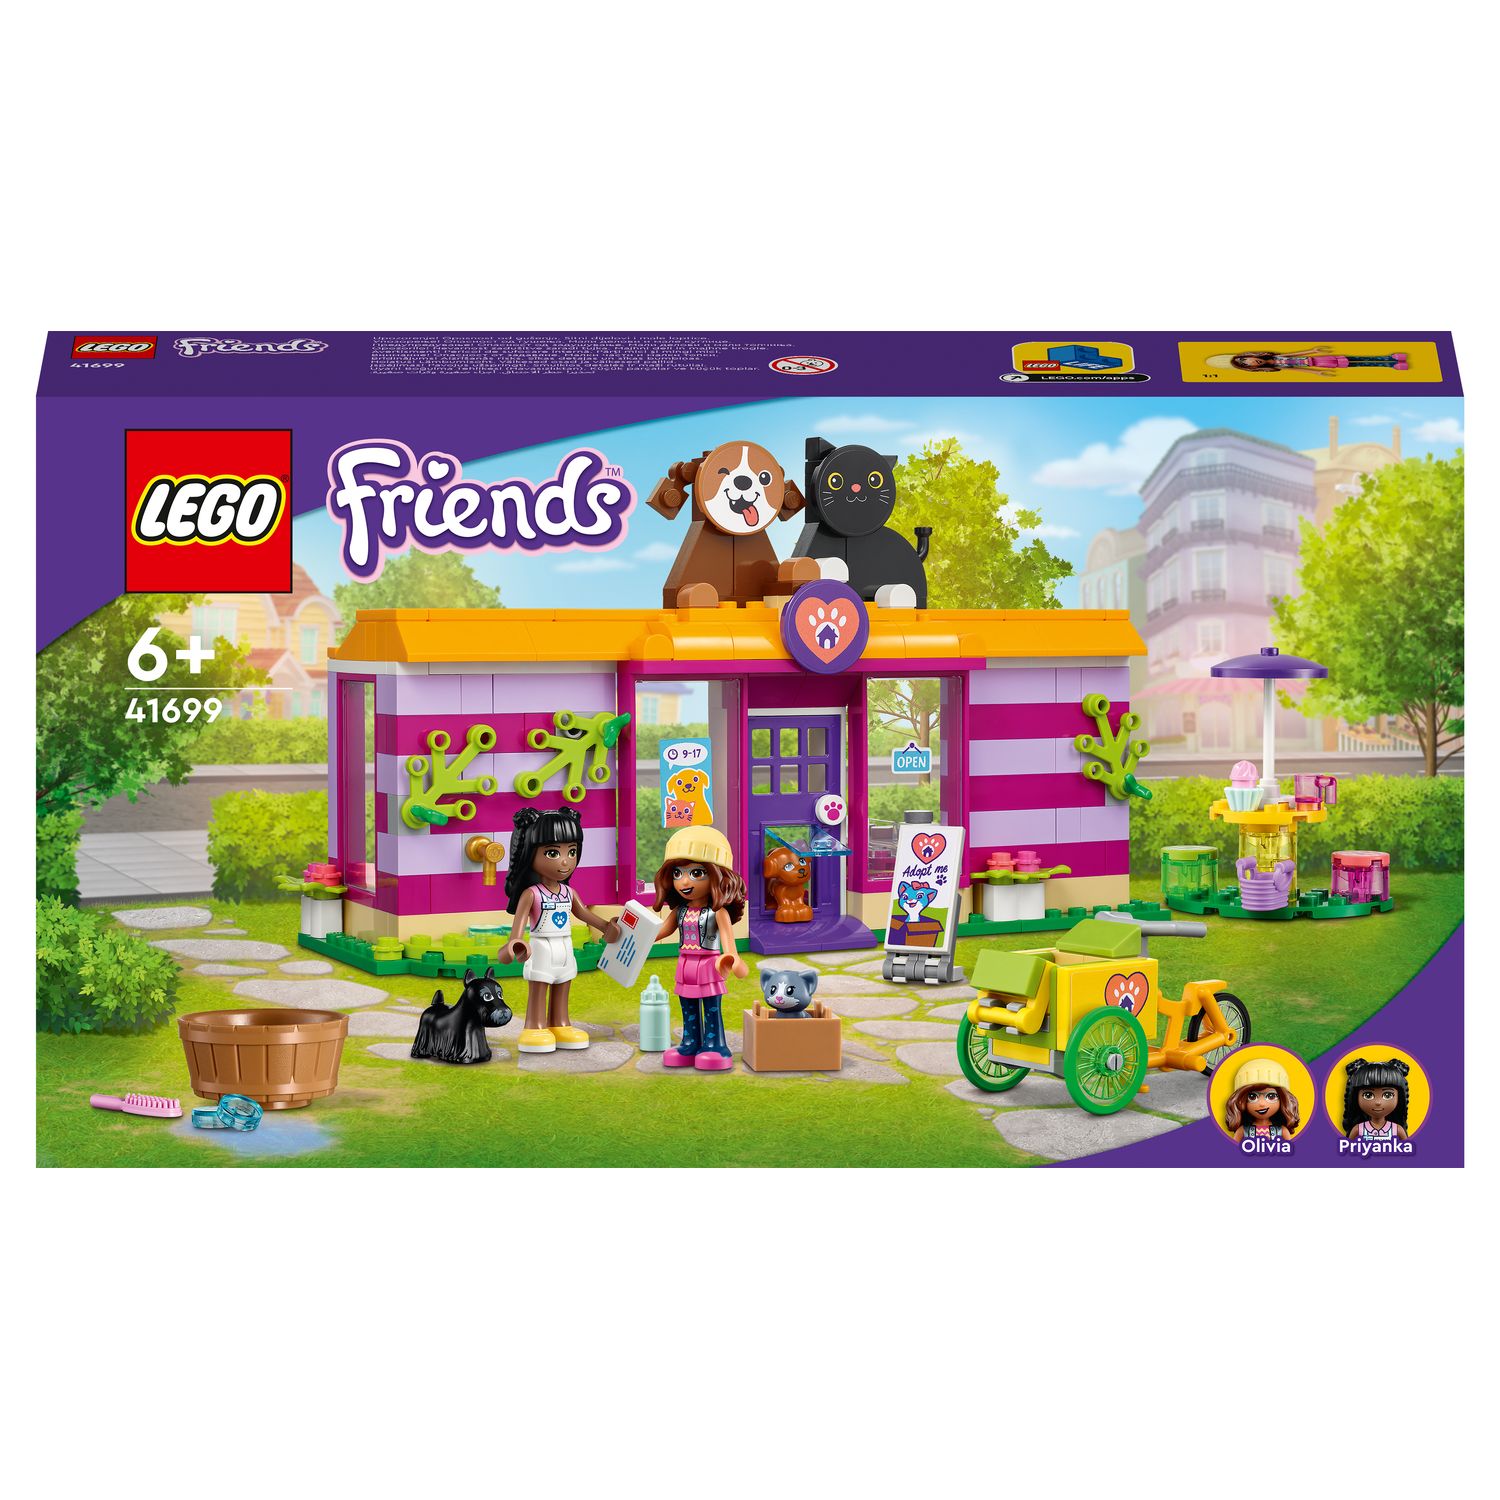 LEGO Friends 41746 - Le Dressage Équestre, Jouet de Chevaux et Poney avec  Mini-Poupées Aliya et Mia, Cadeau de Soin des Animaux pour Enfants pas cher  